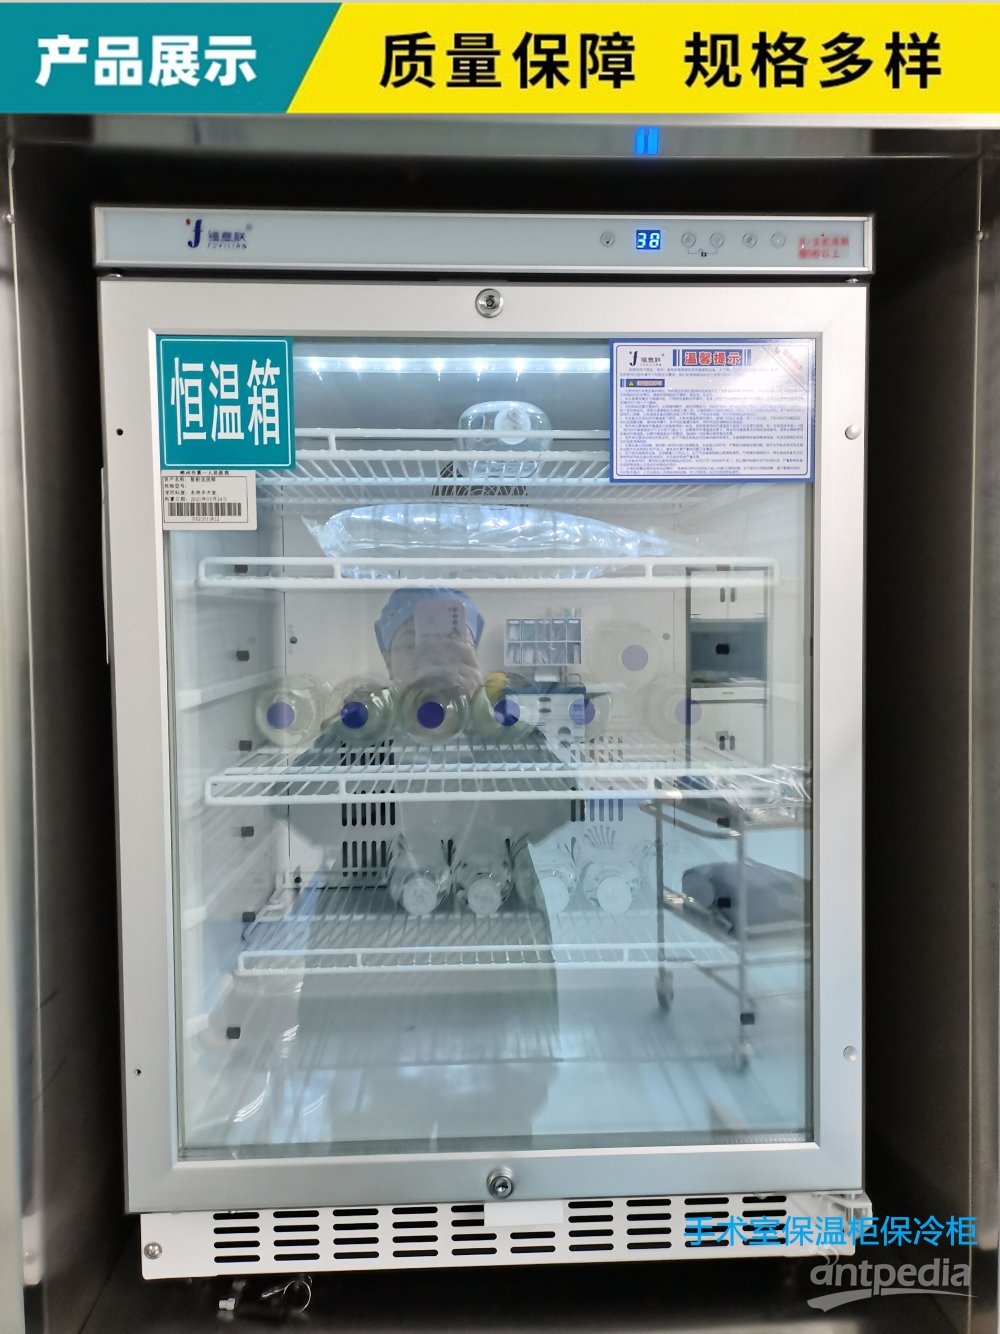 大型冷藏柜 设定温度范围：2℃-8℃操作说明书